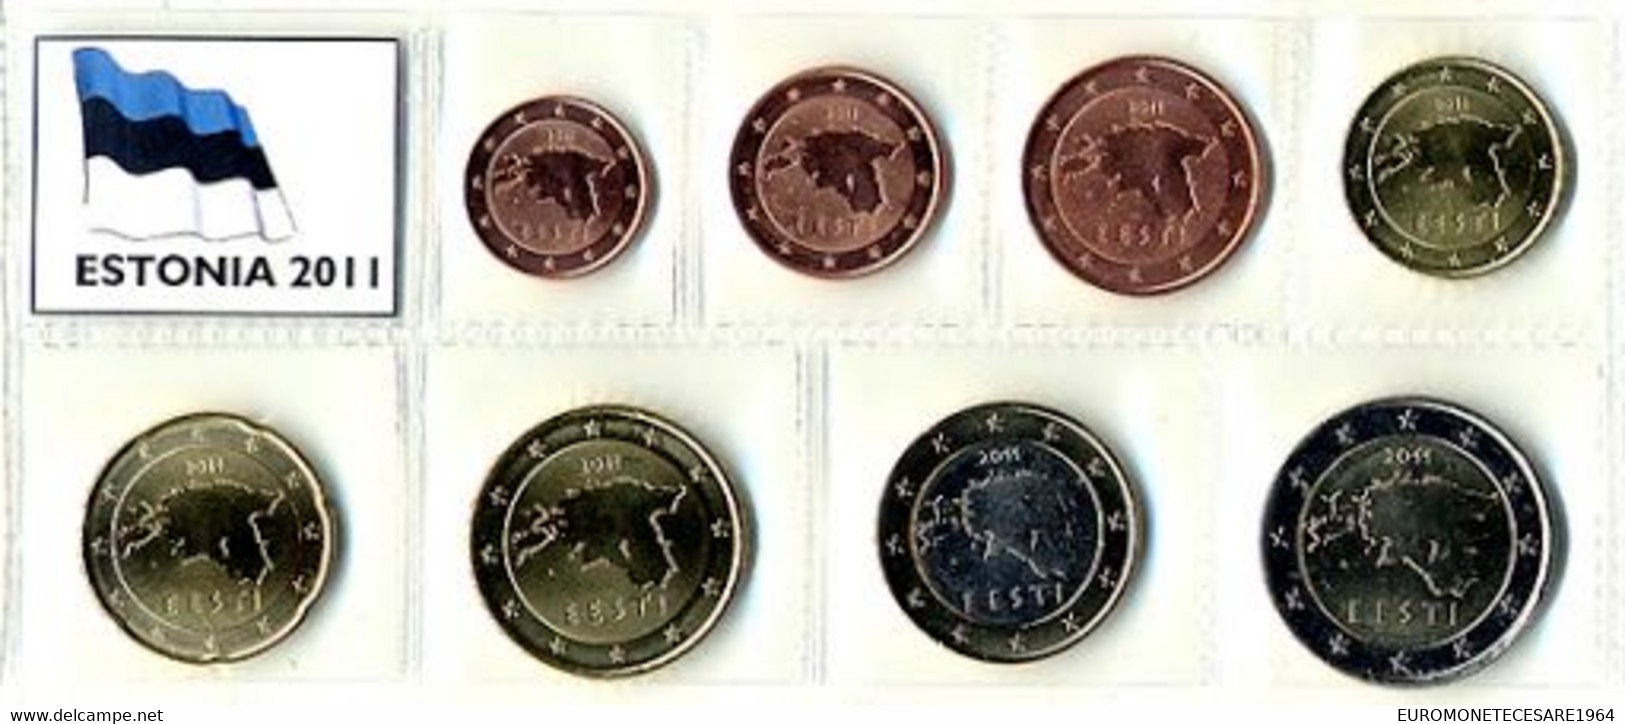 ESTONIA  SERIE EURO  COMPLETA  8 MONETE IN BLISTER   FIOR DI CONIO     B.U. FROM ROLLS - Estland